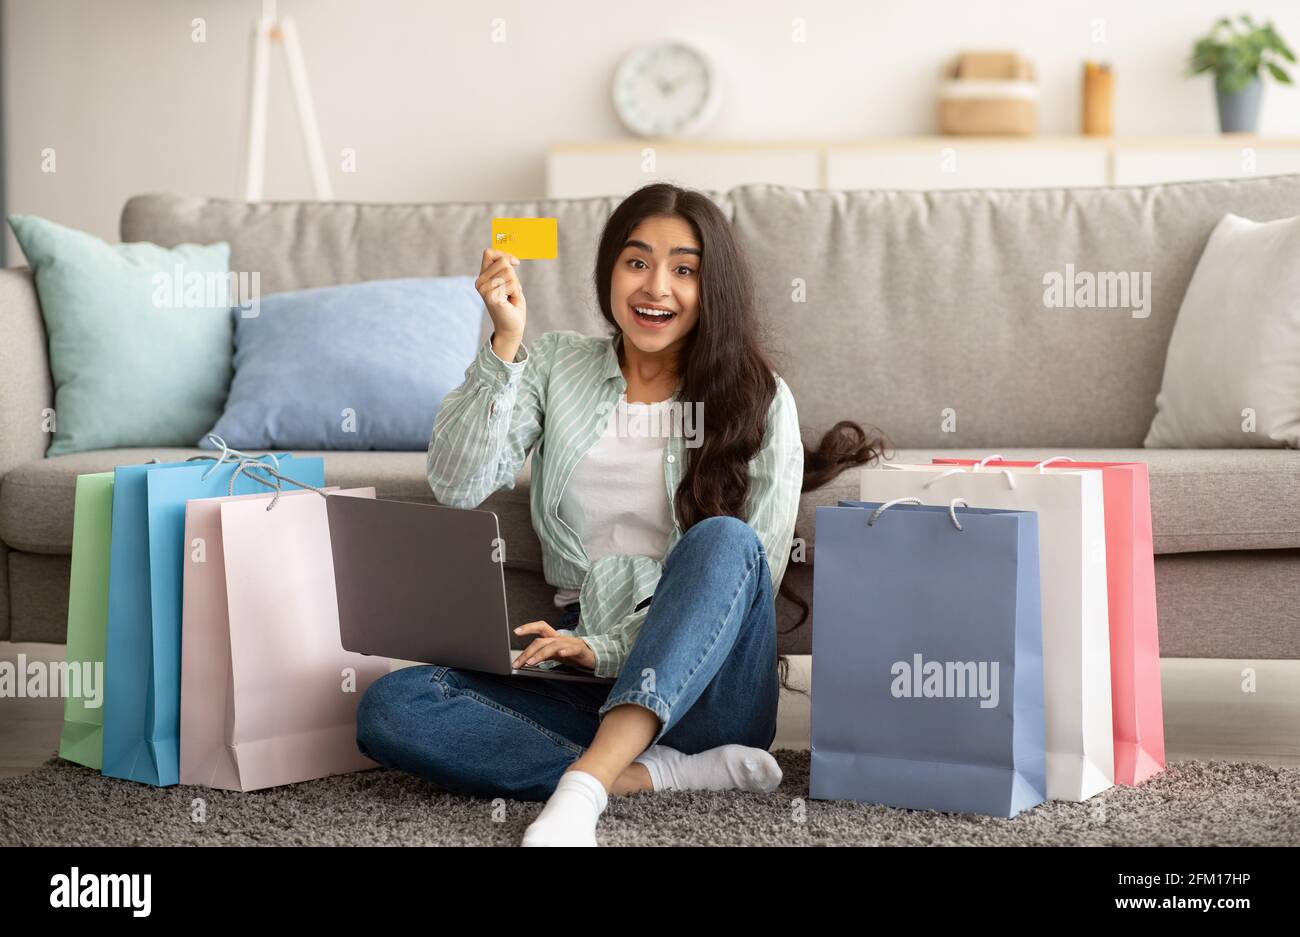 Indische Frau, die sich über den Verkauf im Online-Shop glücklich fühlt, Laptop benutzt, Kreditkarte vorzeigt, mit Geschenktüten auf dem Boden sitzt Stockfoto